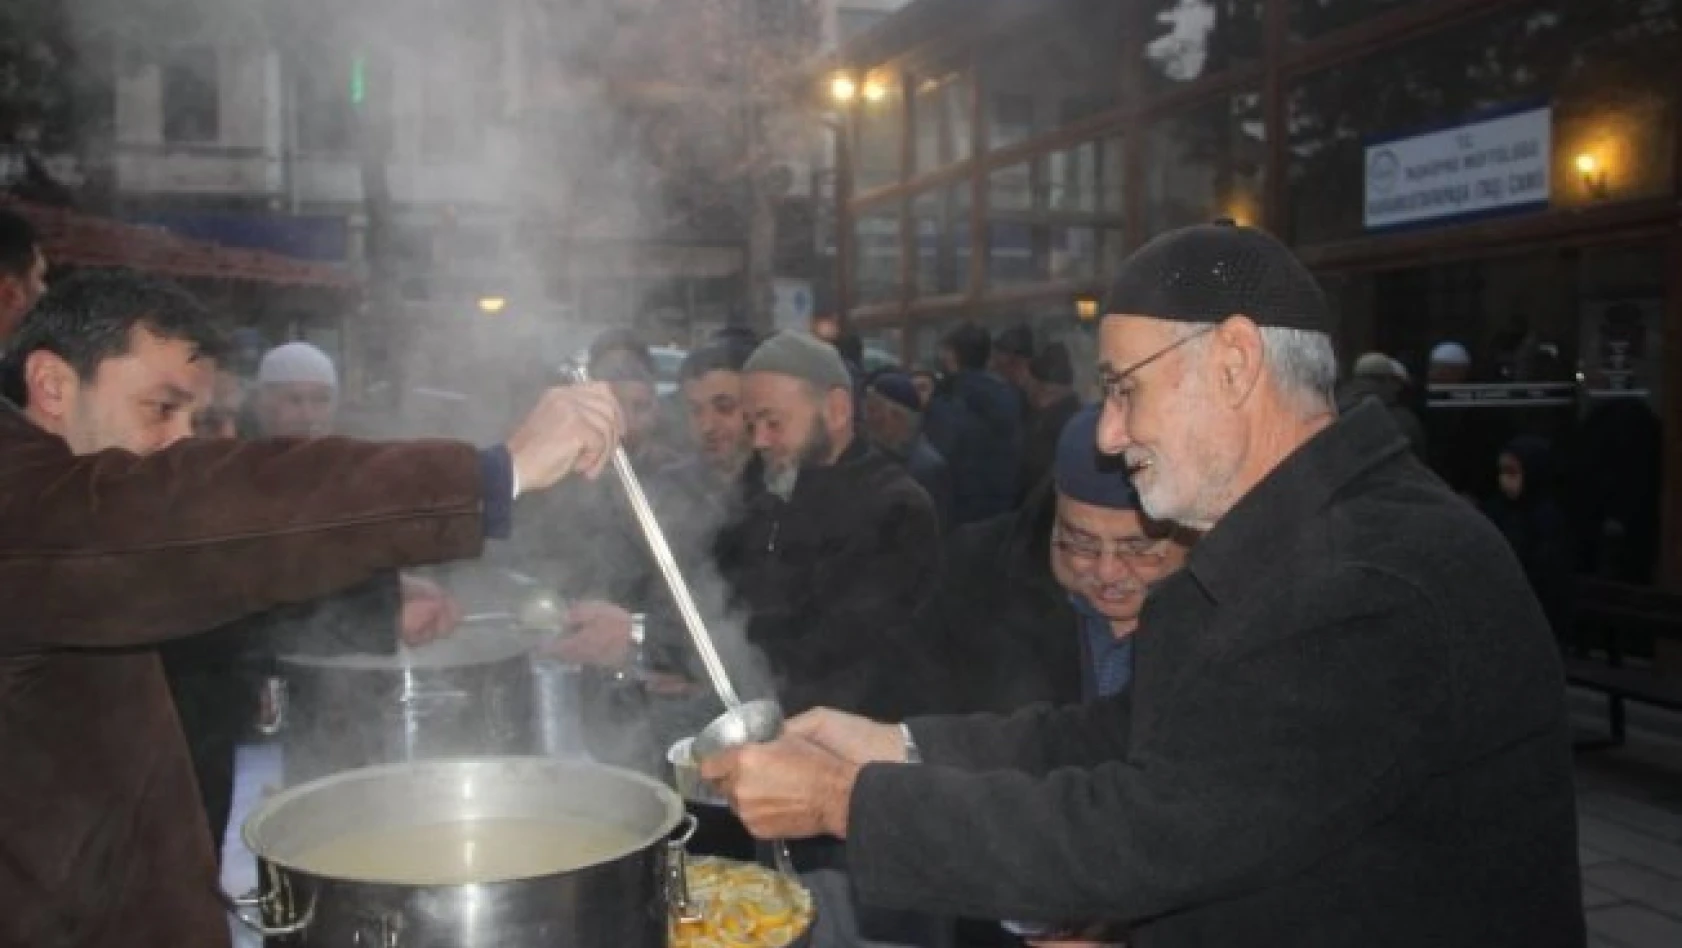 Taşköprü Belediyesi'nden sabah çorba ikramı